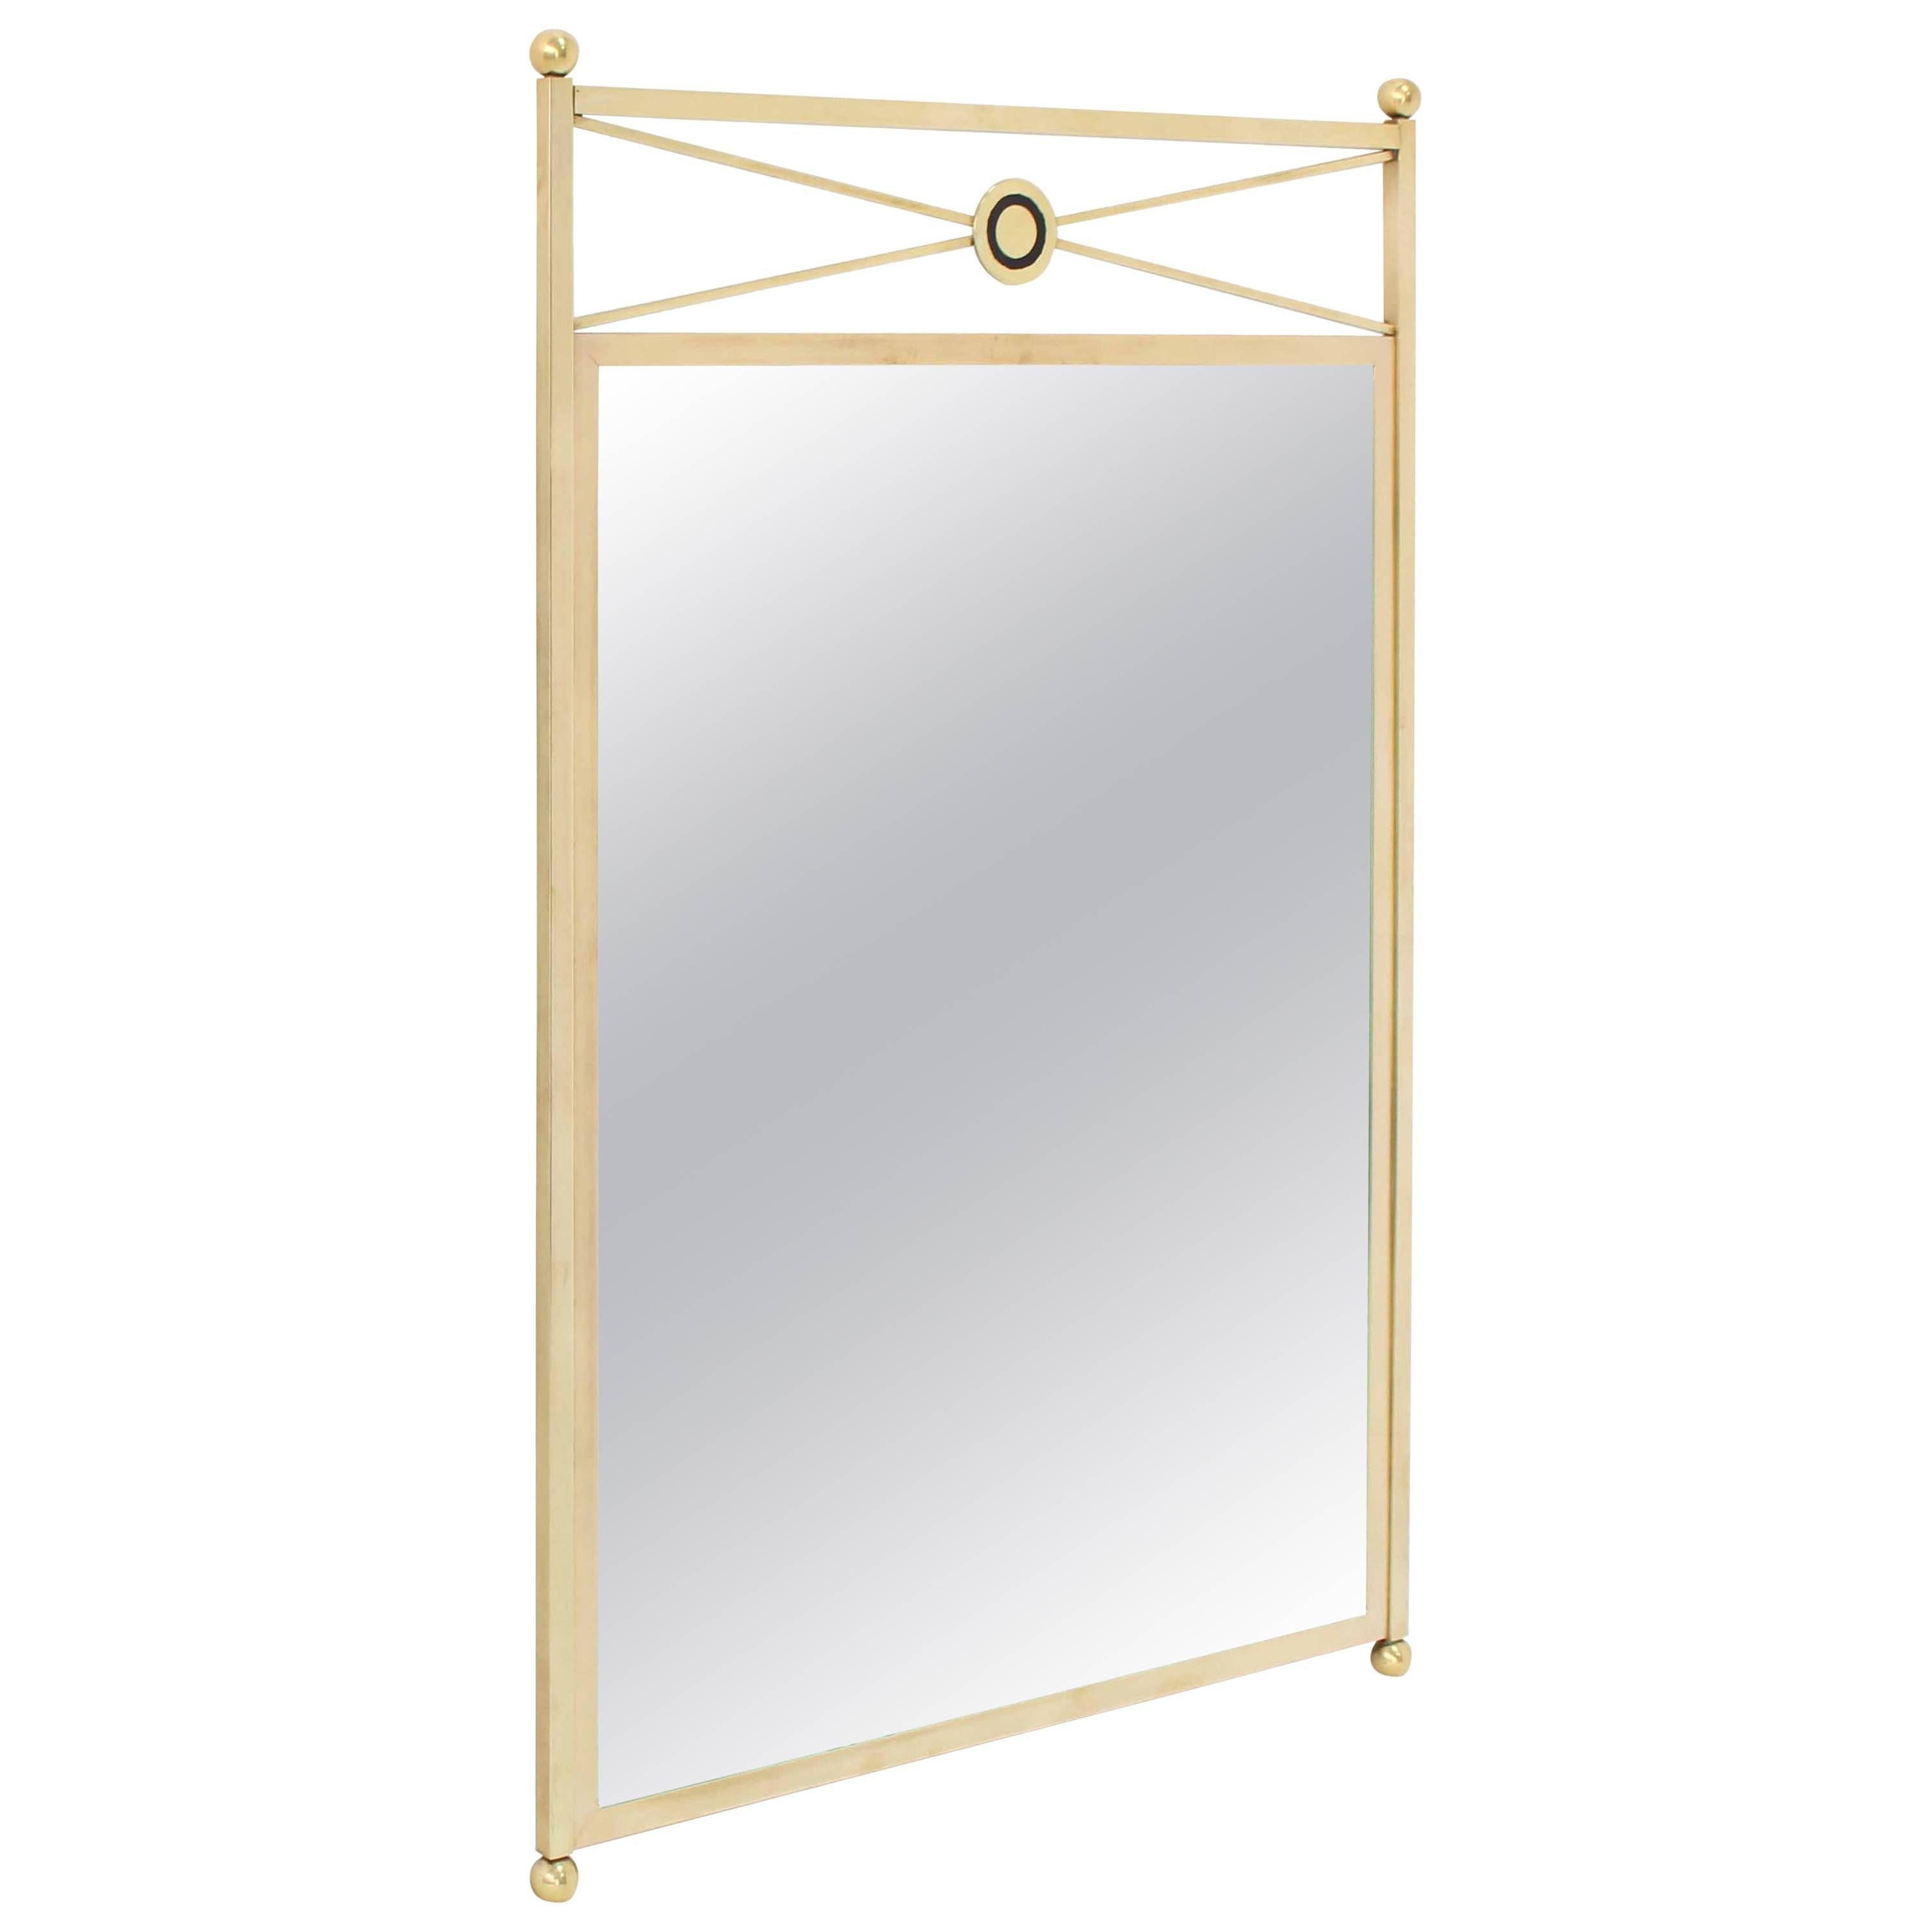 Solid Brass Frame Mirror